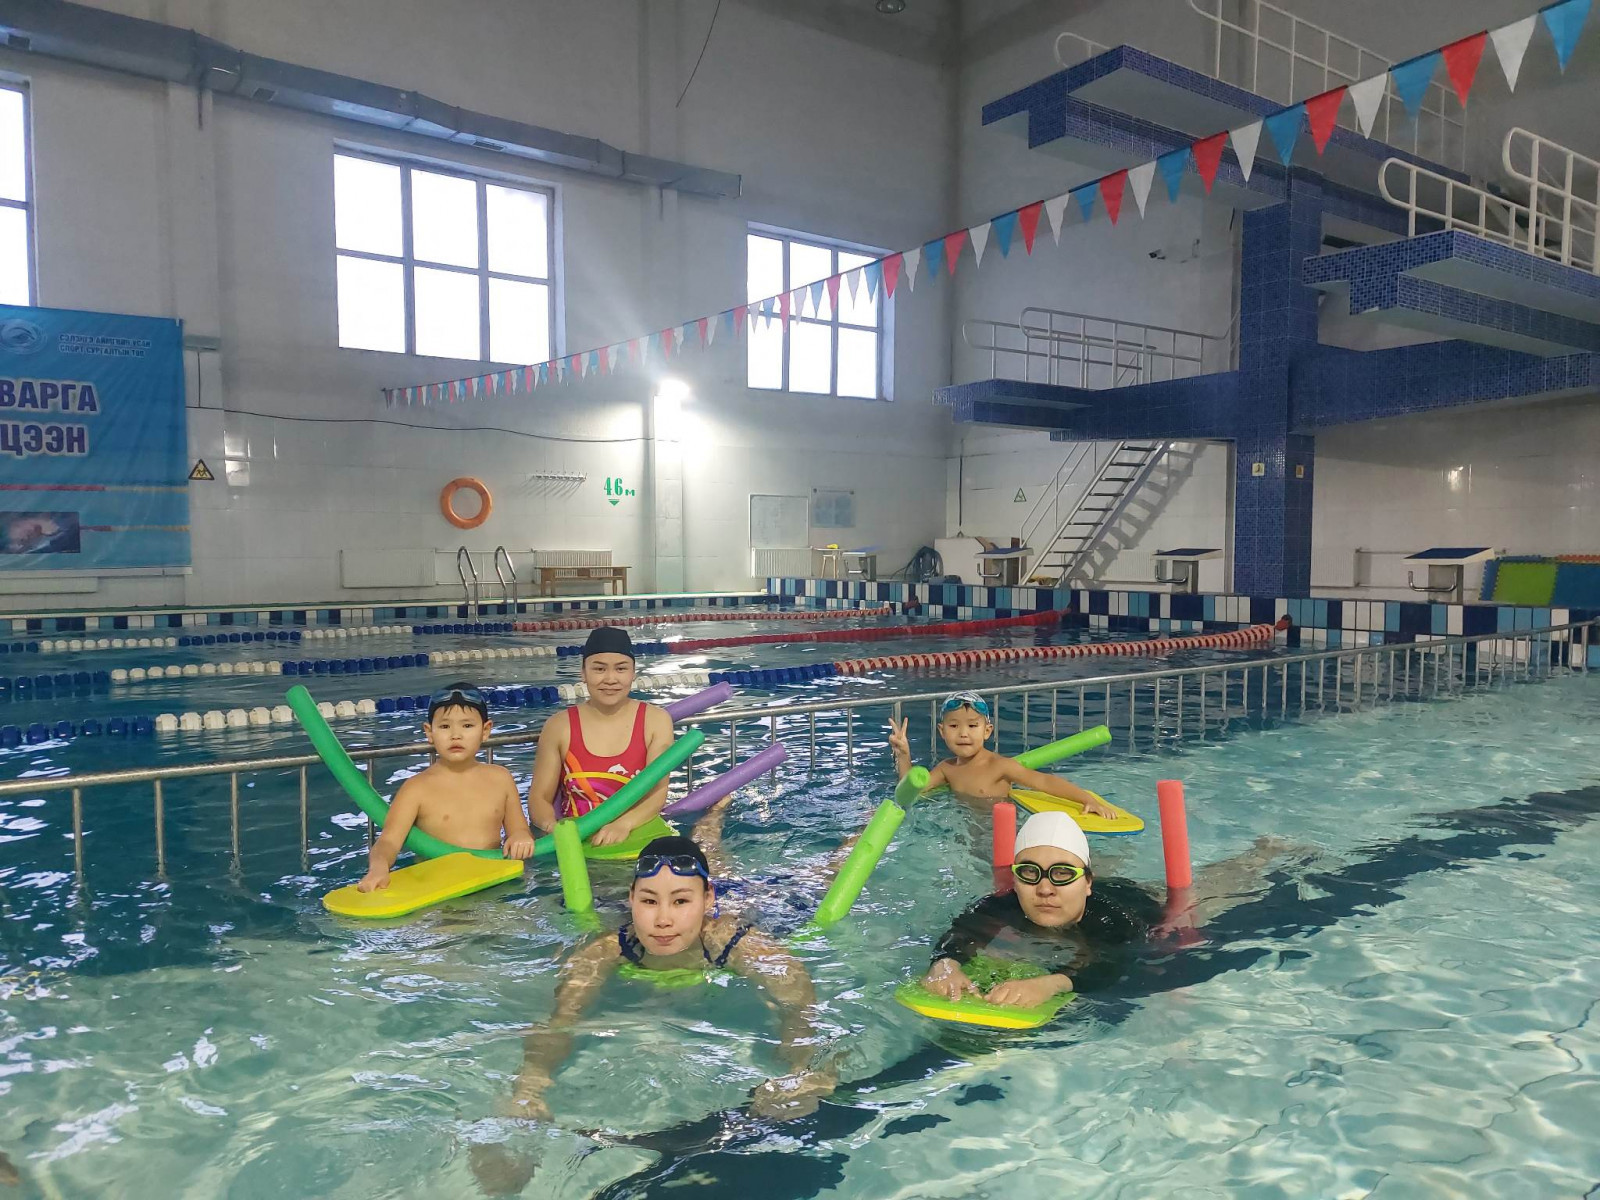 Сэлэнгийн хилчид гэр бүлийн хамт усан спортоор хичээллэх боломжтой боллоо